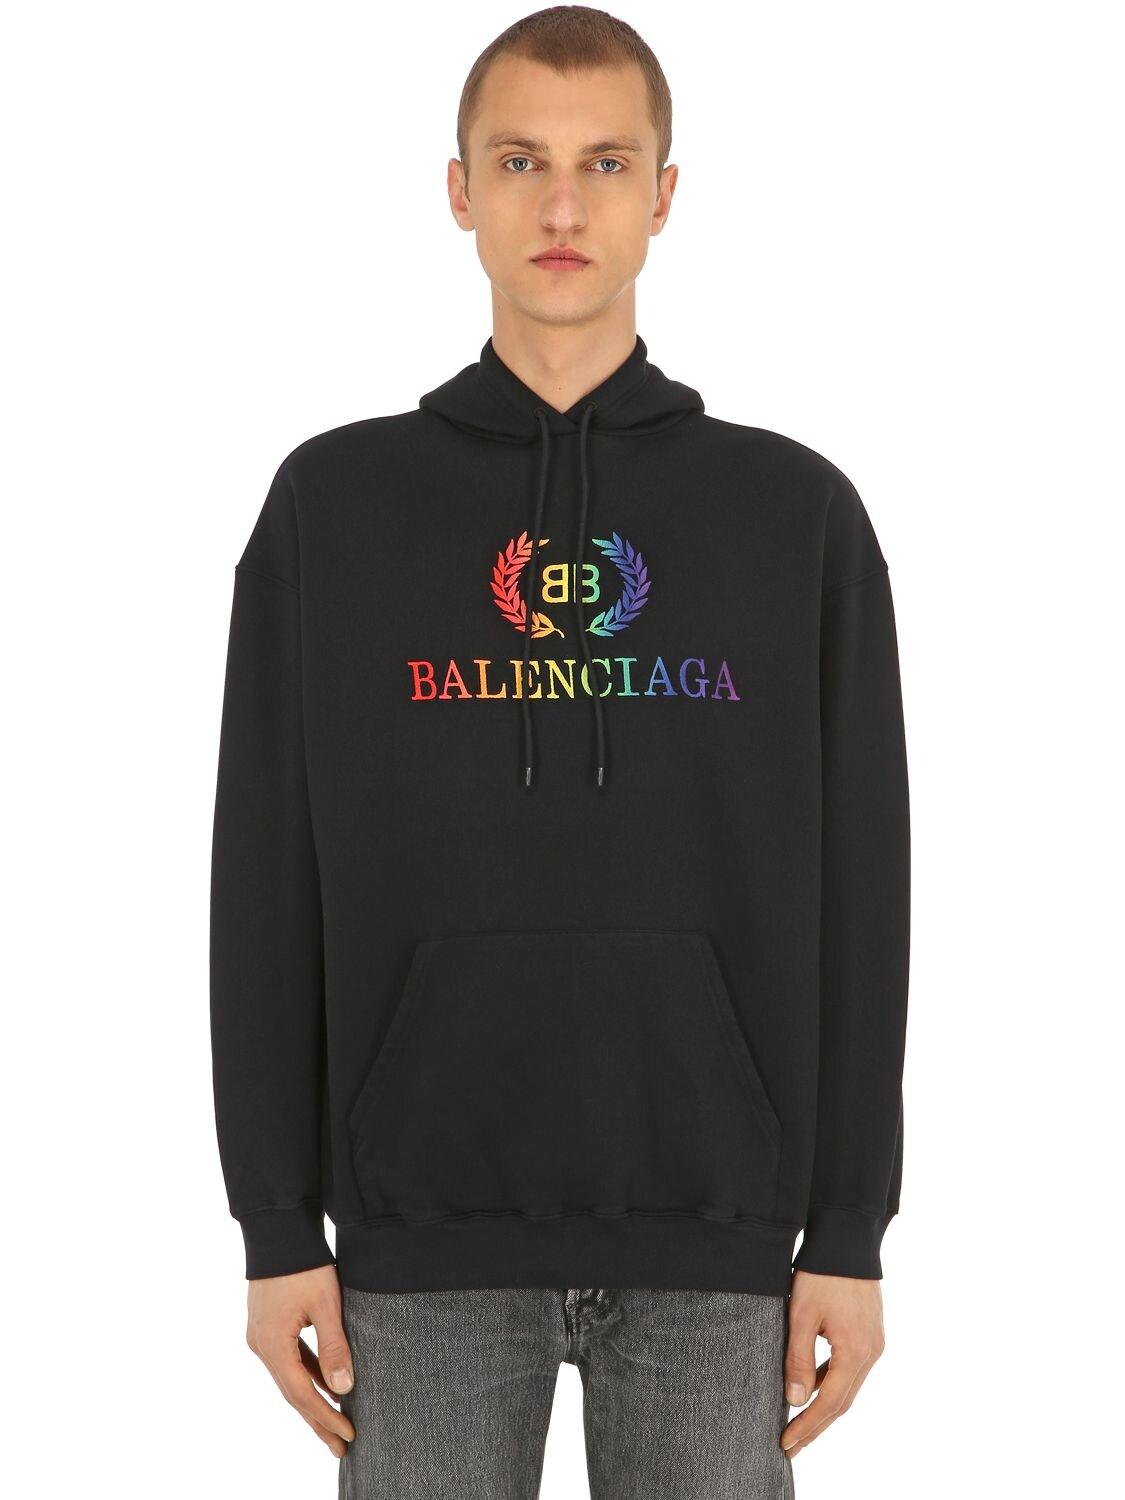 balenciaga rainbow sweatshirt